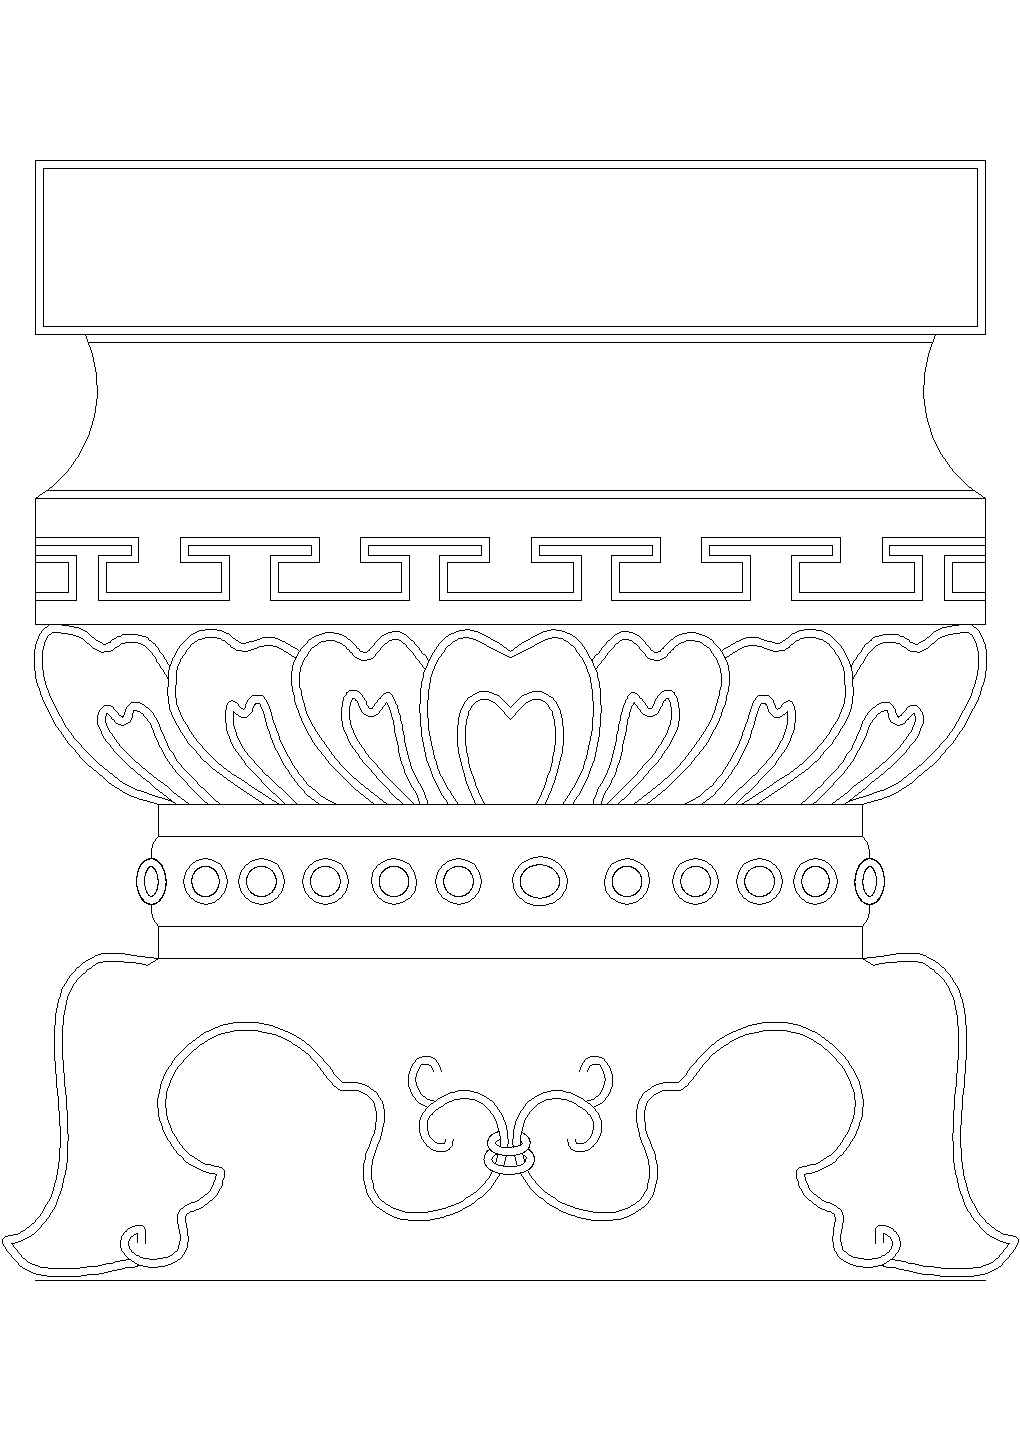 中式柱头的cad样式图及详图设计